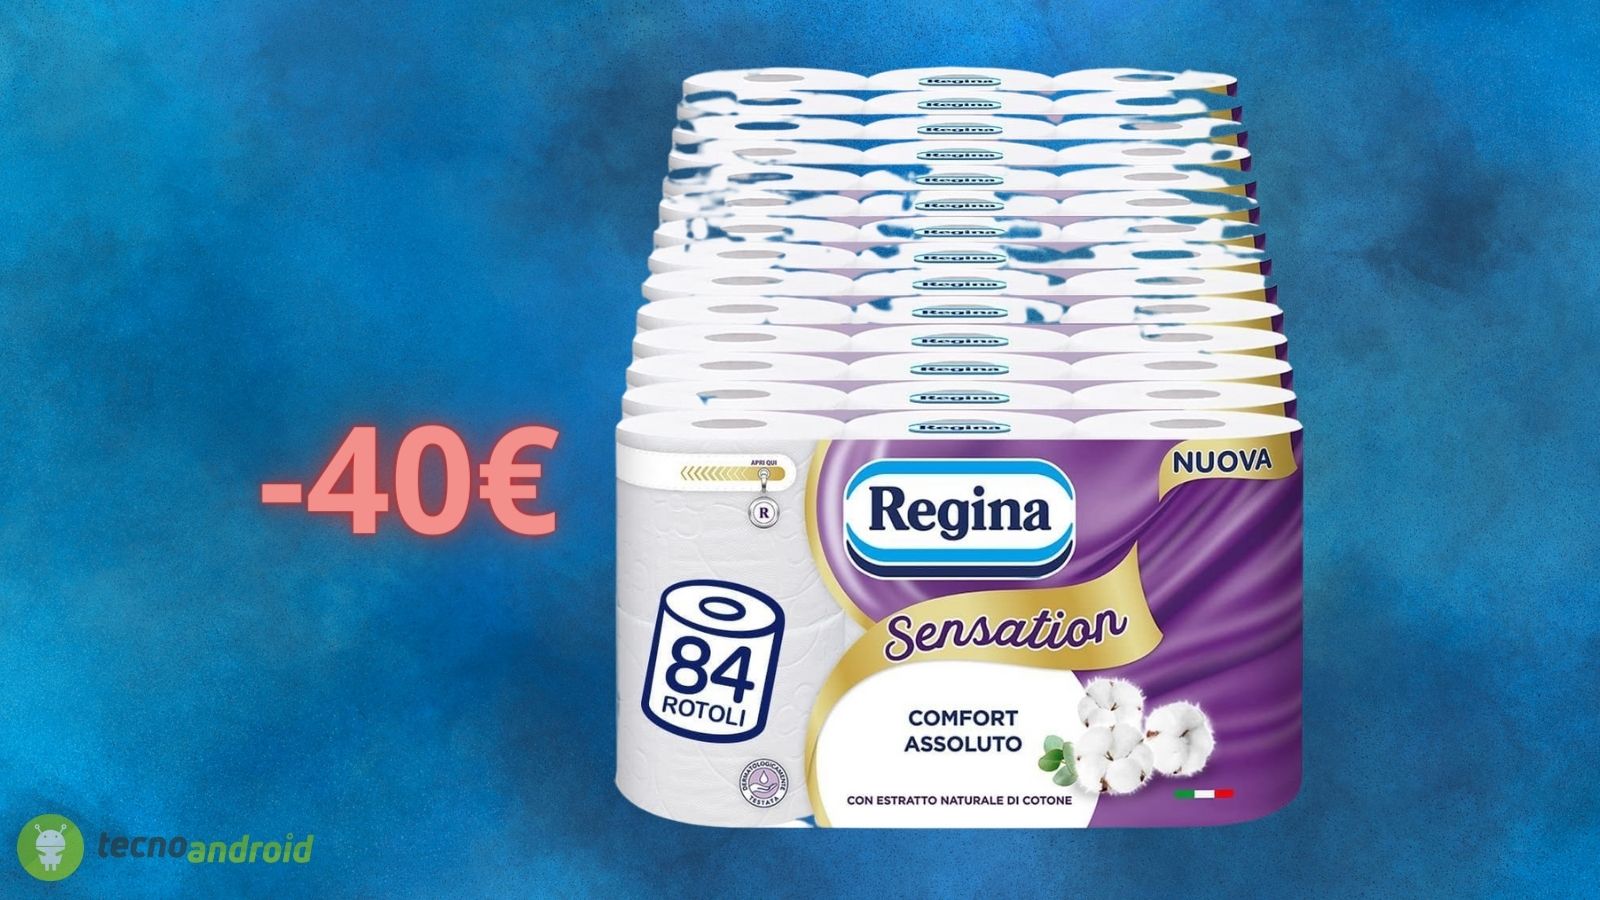 Carta igienica Regina, confezione da 84 rotoli scontata di 40€ -  TecnoAndroid